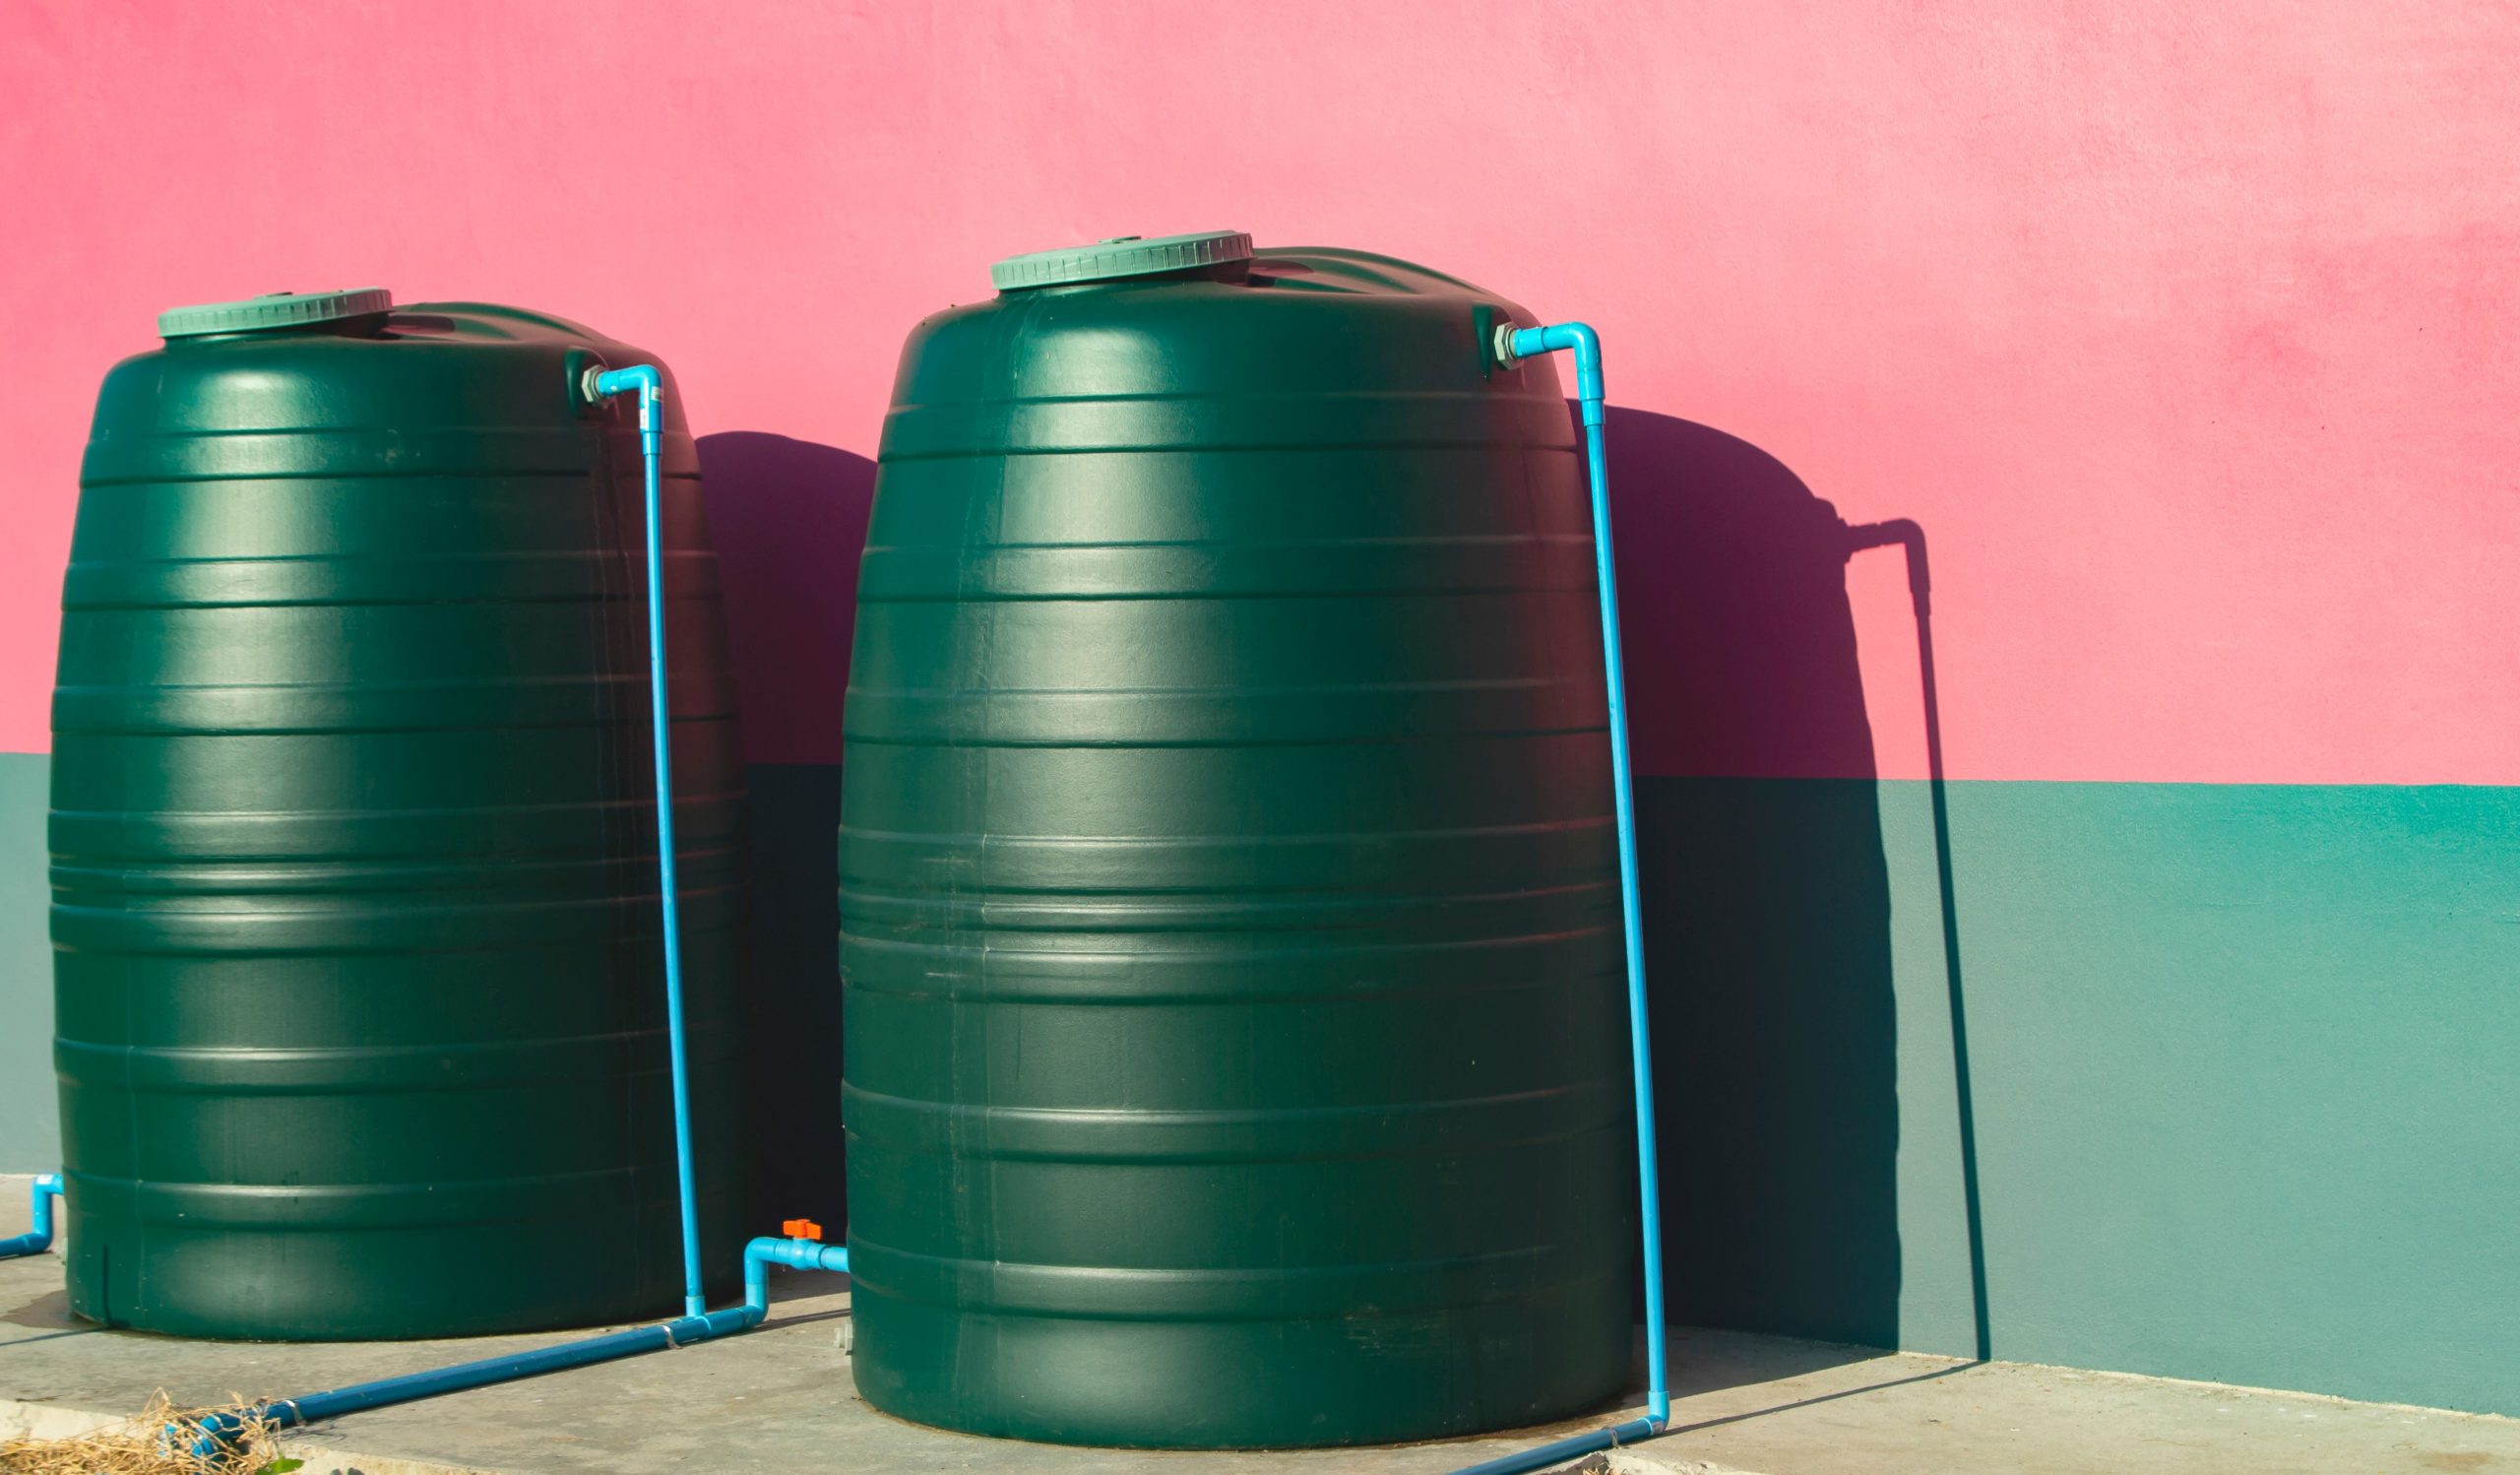 Duas cisternas de plástico da cor verde, conectada por canos azuis. As cisternas estão sobre uma caçada de cimento e a cor da parede logo atrás é metade verde e metade vermelha